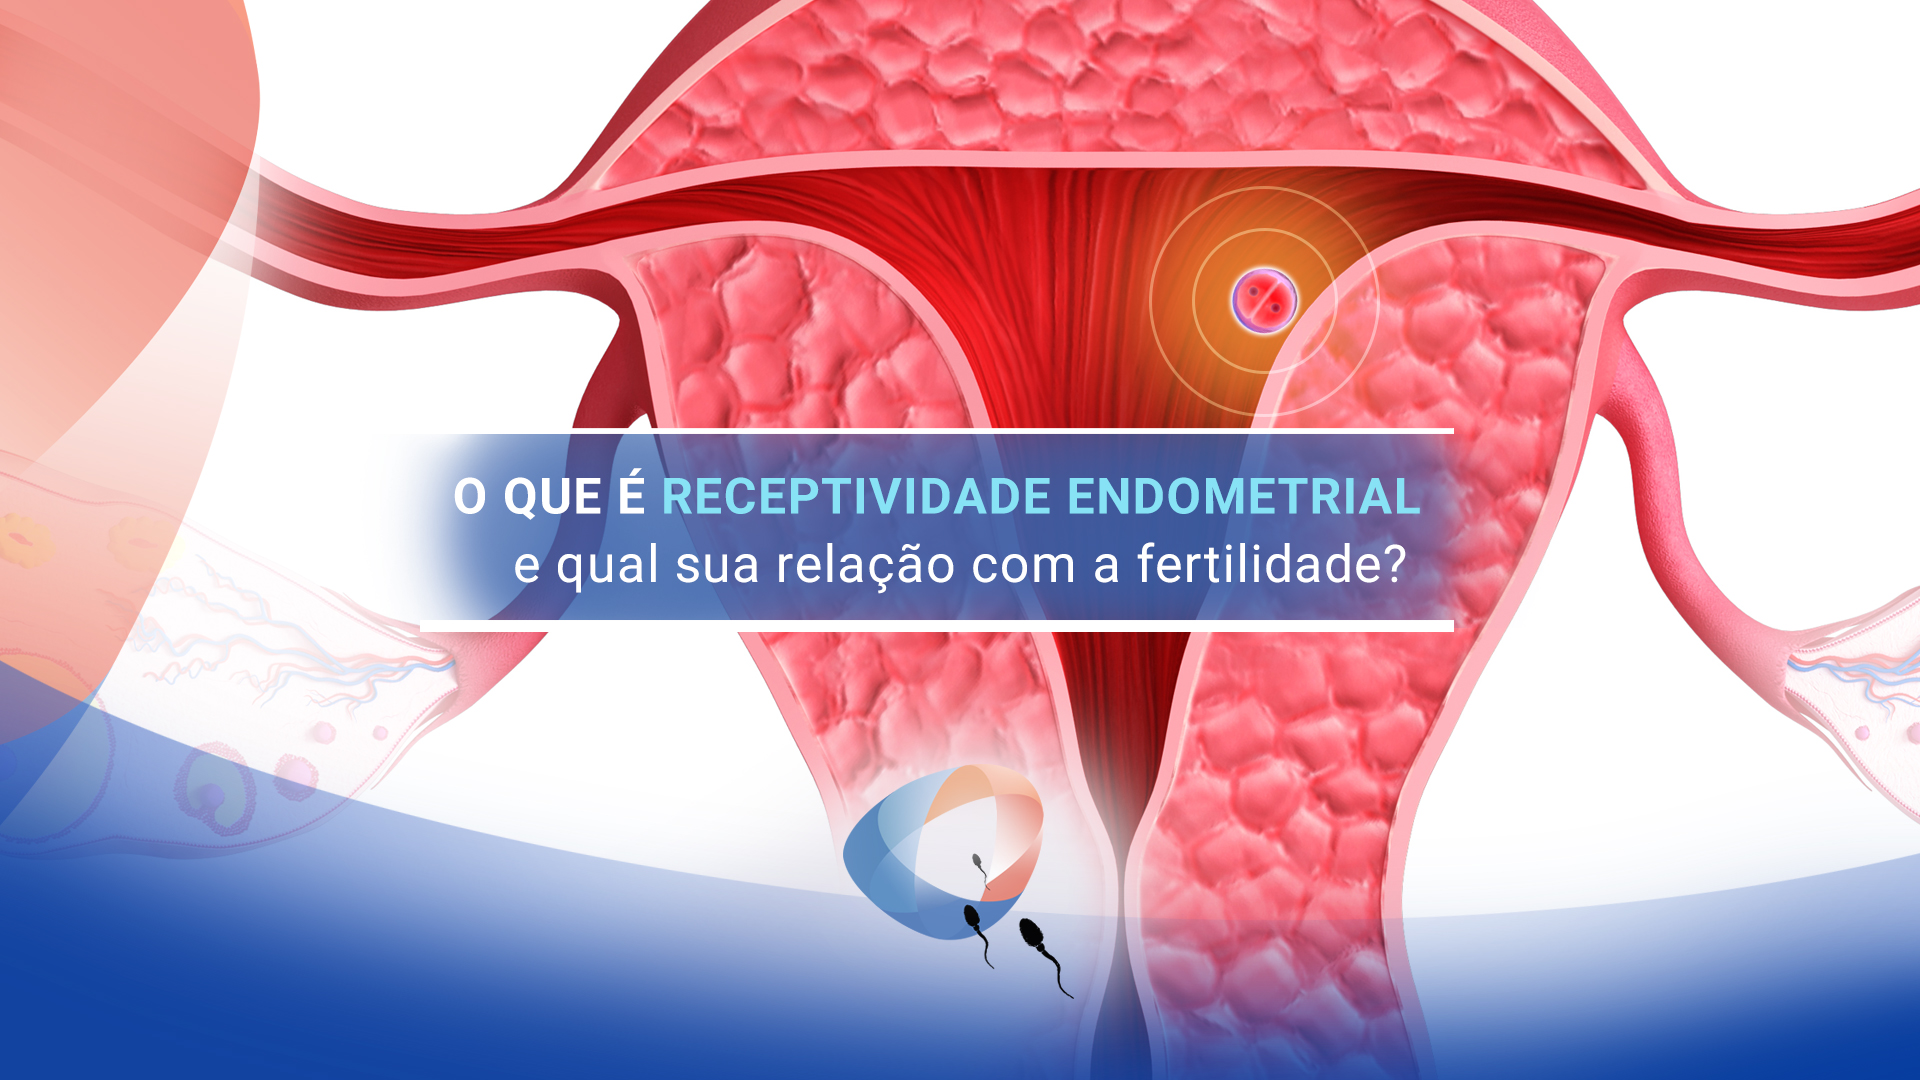 O que é receptividade endometrial e qual sua relação com a fertilidade